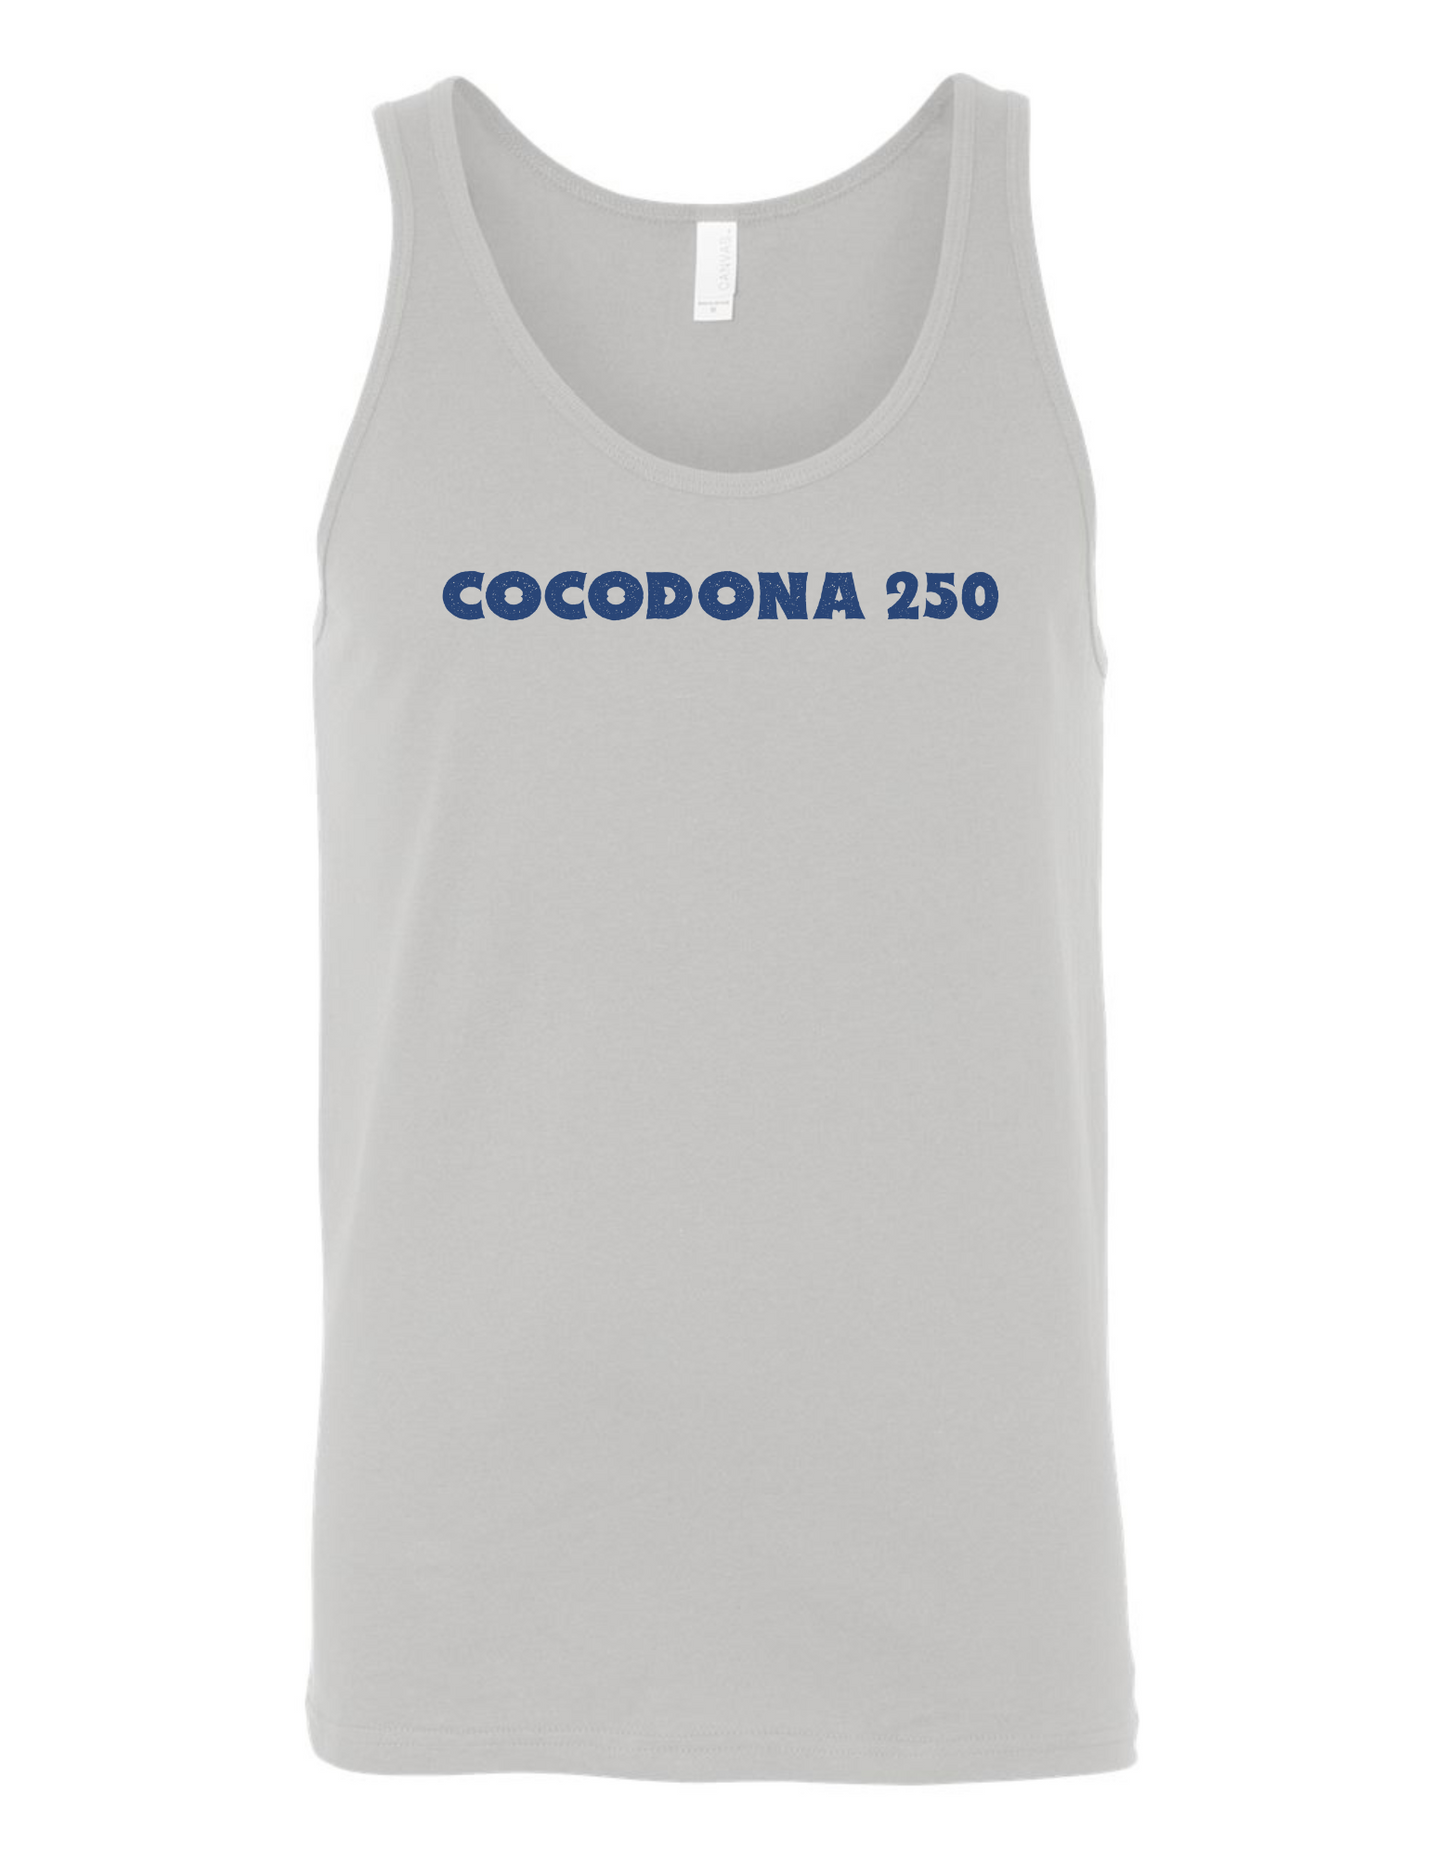 Cocodona 250 Unisex Tank